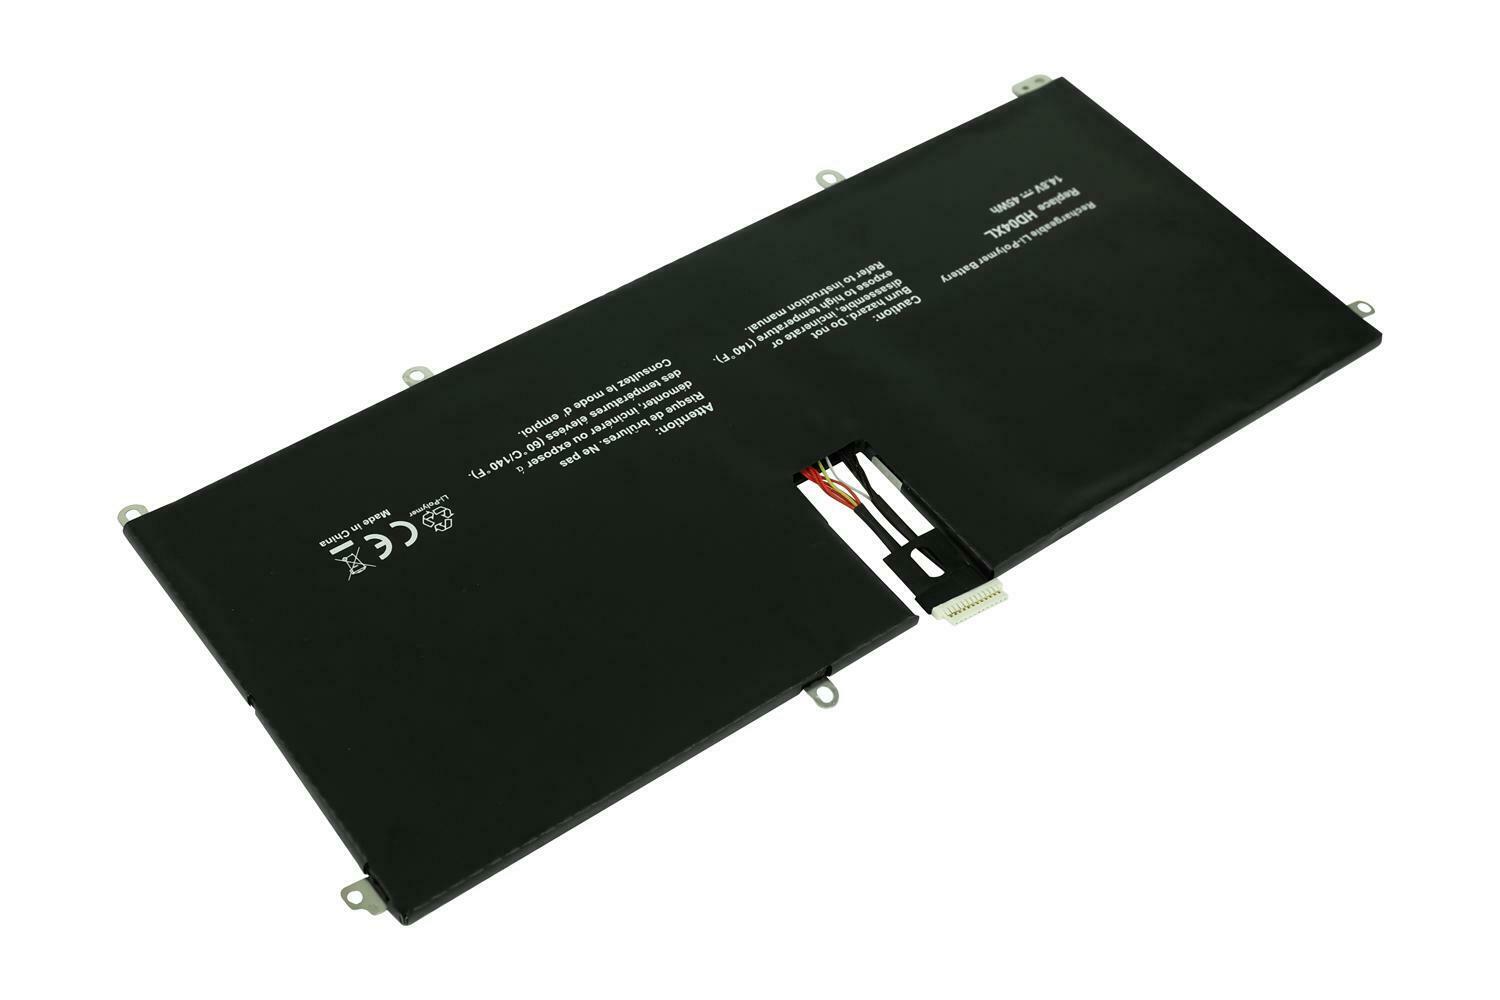 HD04XL HSTNN-IB3V 685989-001 HP SPECTRE XT 13 B000 2113TU 2023TU kompatibelt batterier